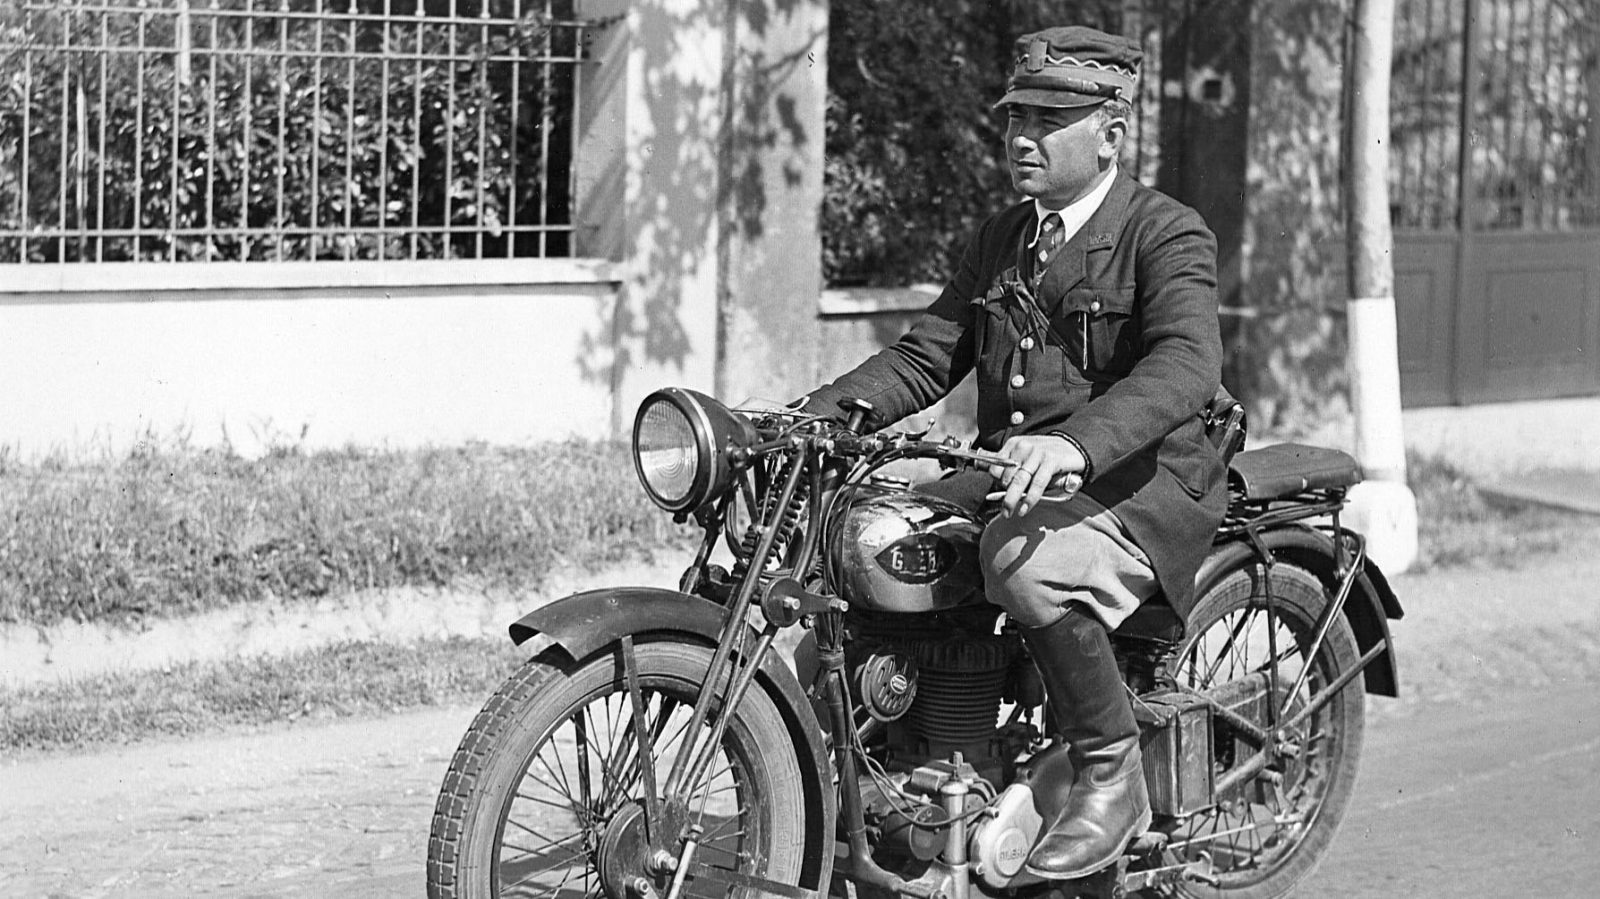 Capo cantoniere in moto, anni ‘30 (Archivio storico Anas)